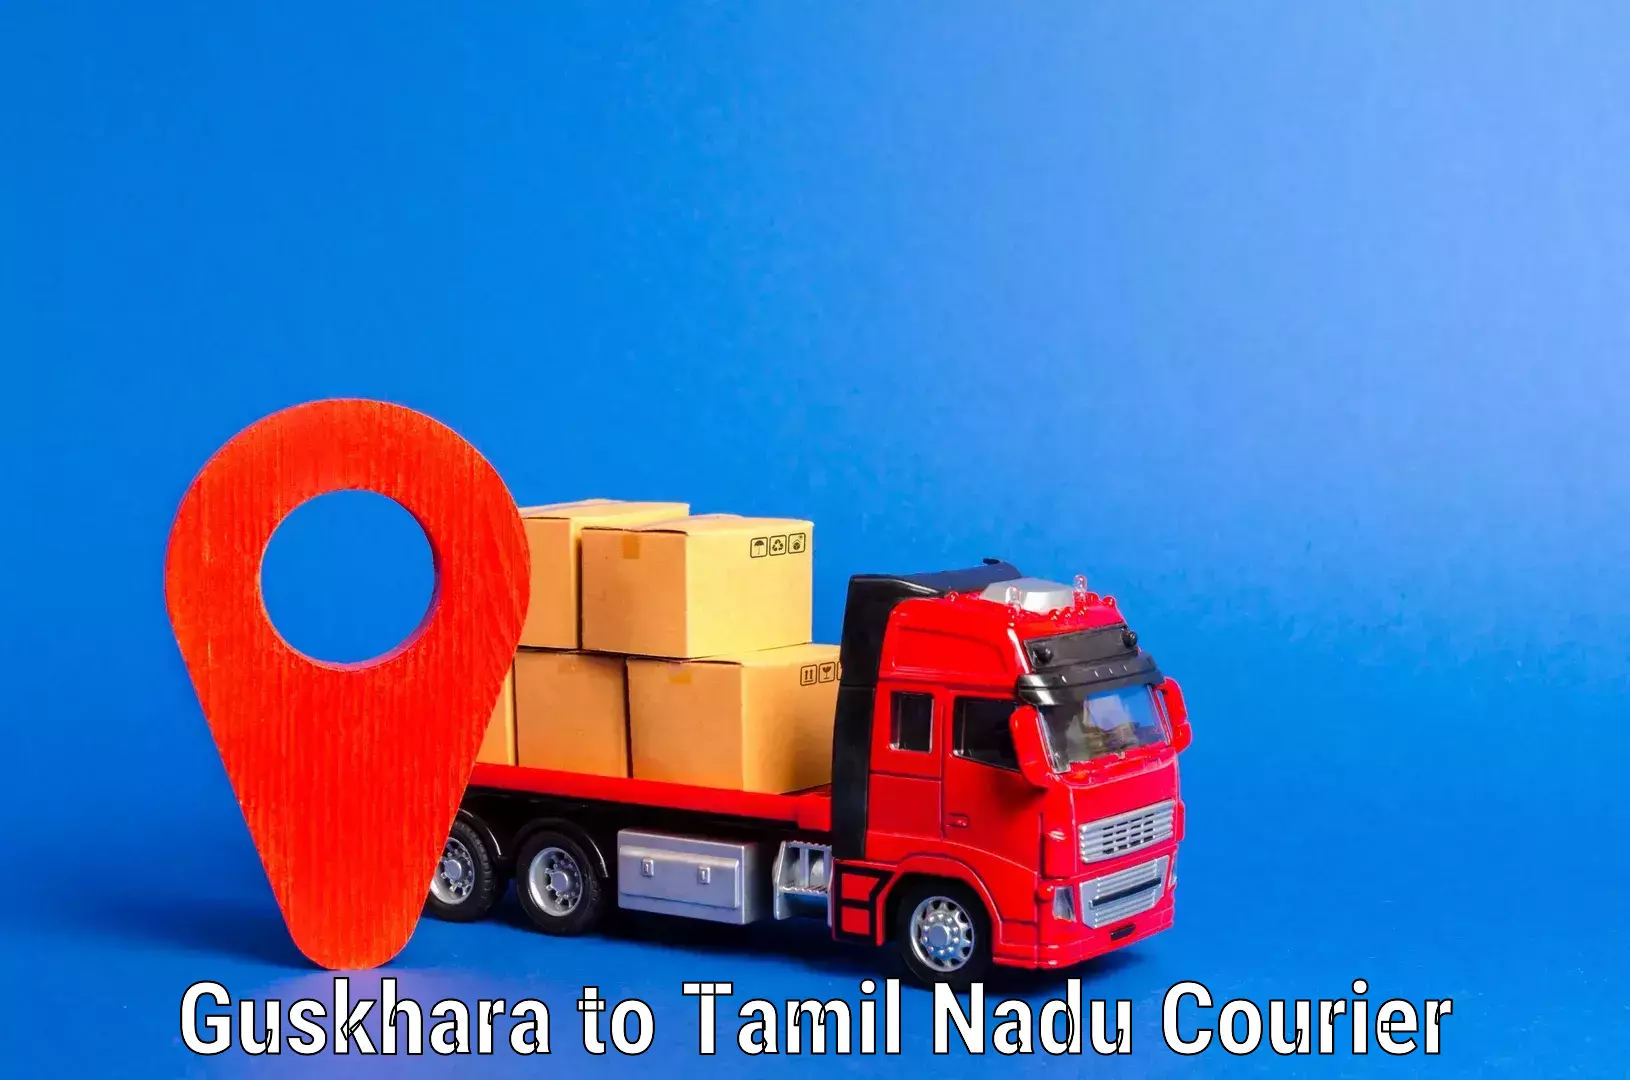 Efficient moving company Guskhara to Tamil Nadu